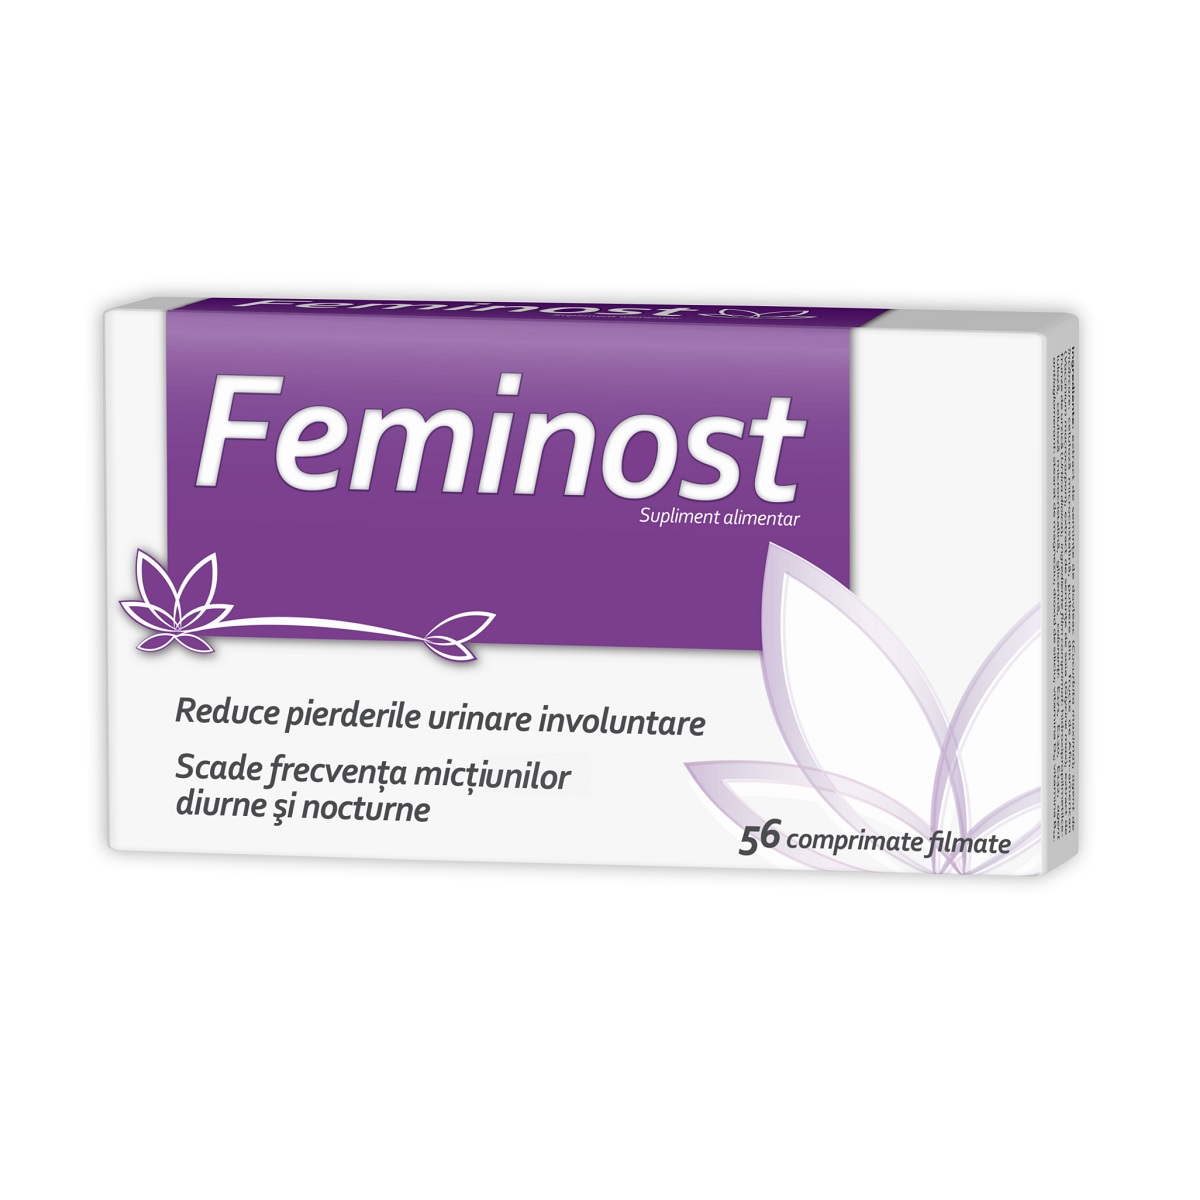 Dezinfectante urinare - Feminost, 56 comprimate, Natur Produkt, sinapis.ro